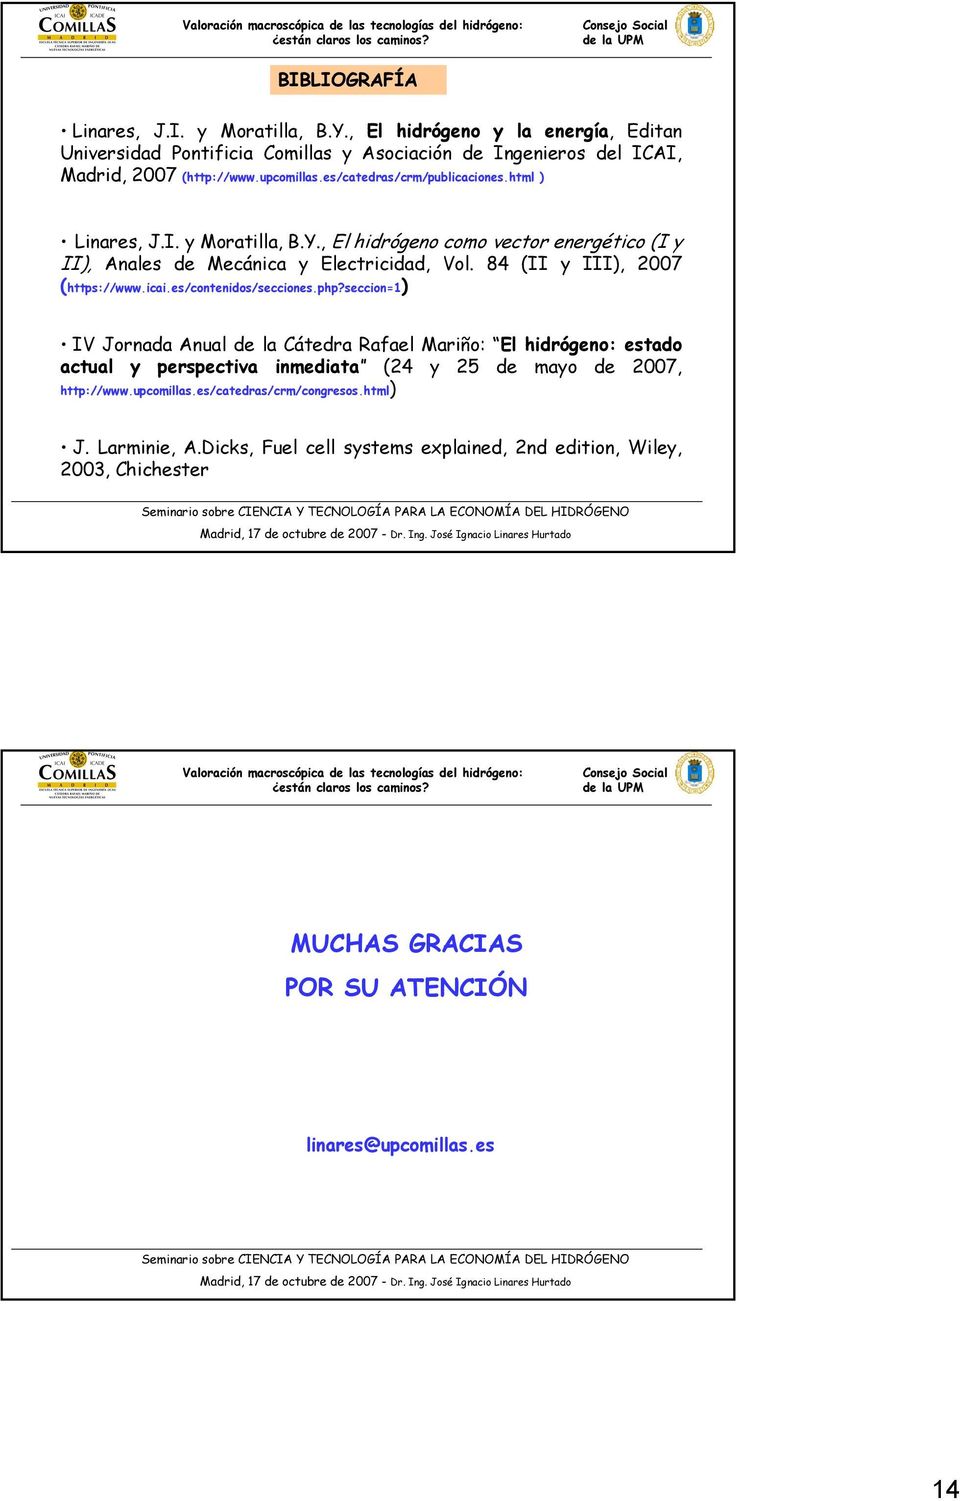 84 (II y III), 2007 (https://www.icai.es/contenidos/secciones.php?